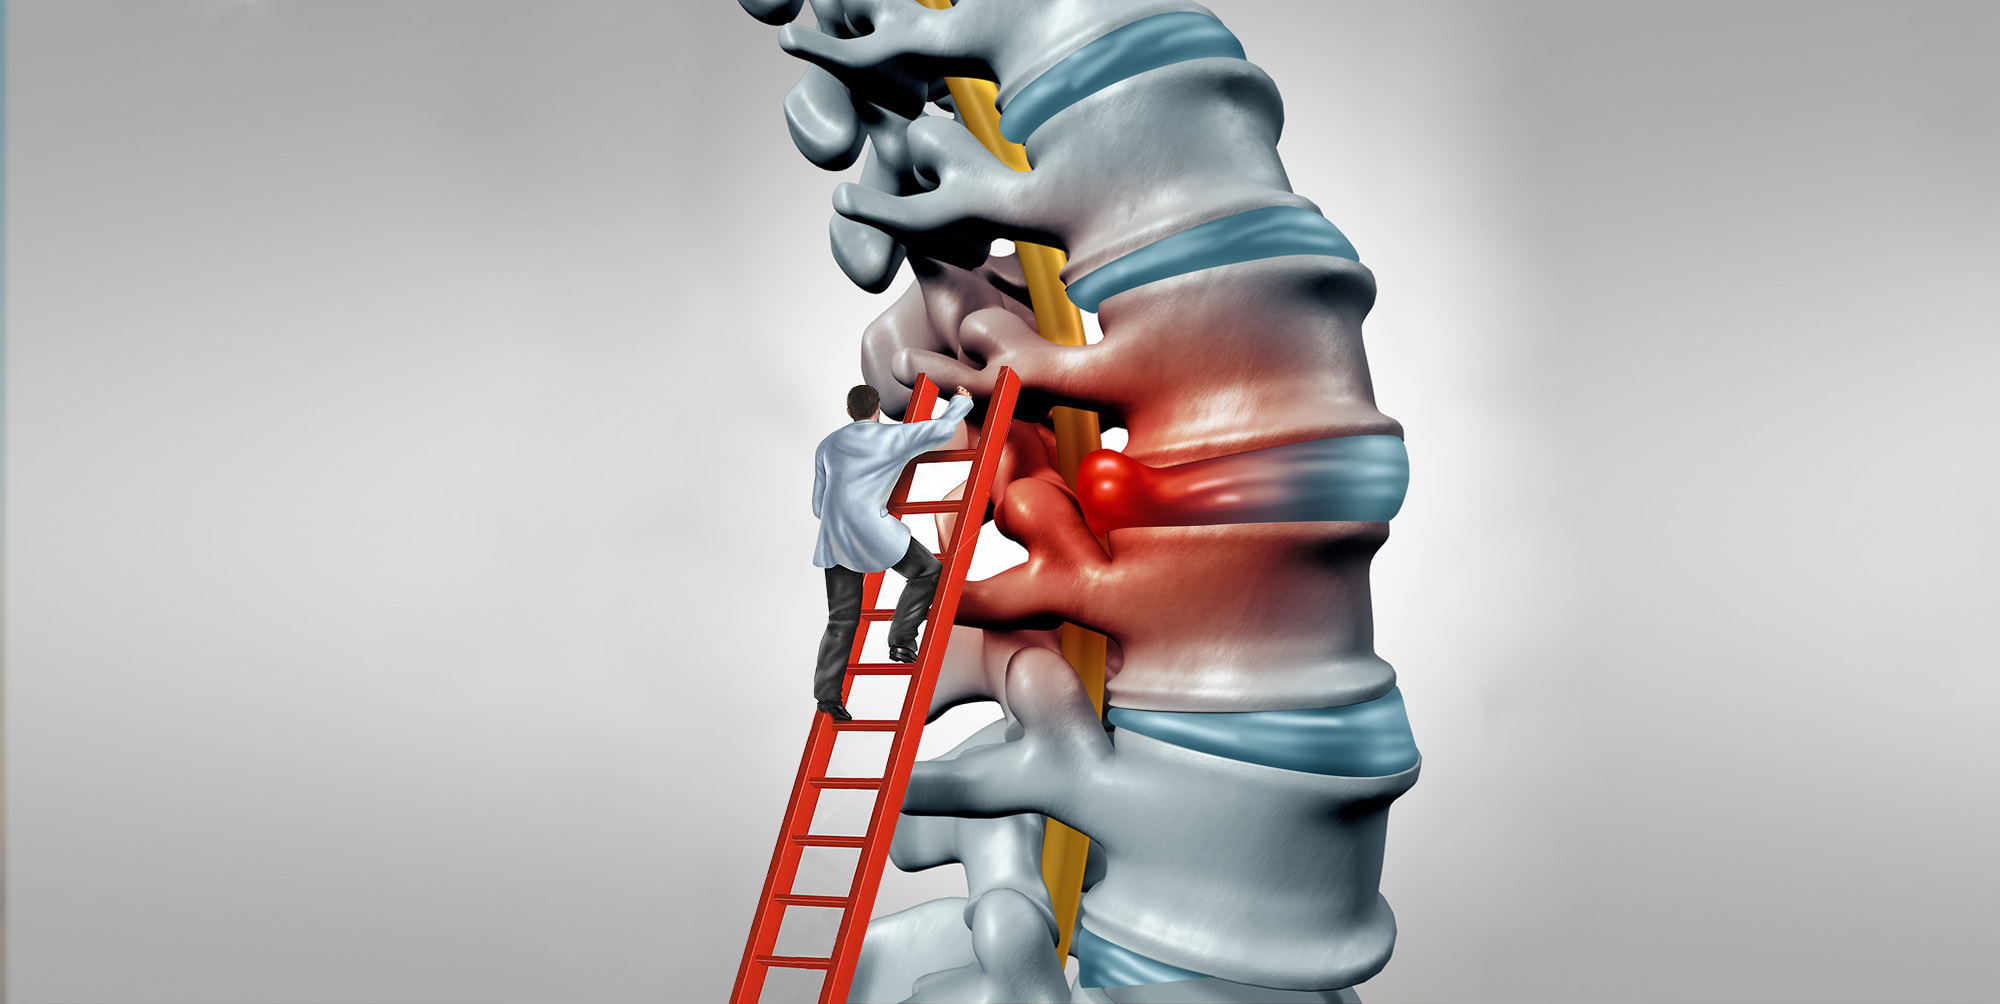 Durere în articulația coloanei vertebrale toracice, Hernia de disc: cum apare, simptome, tratament